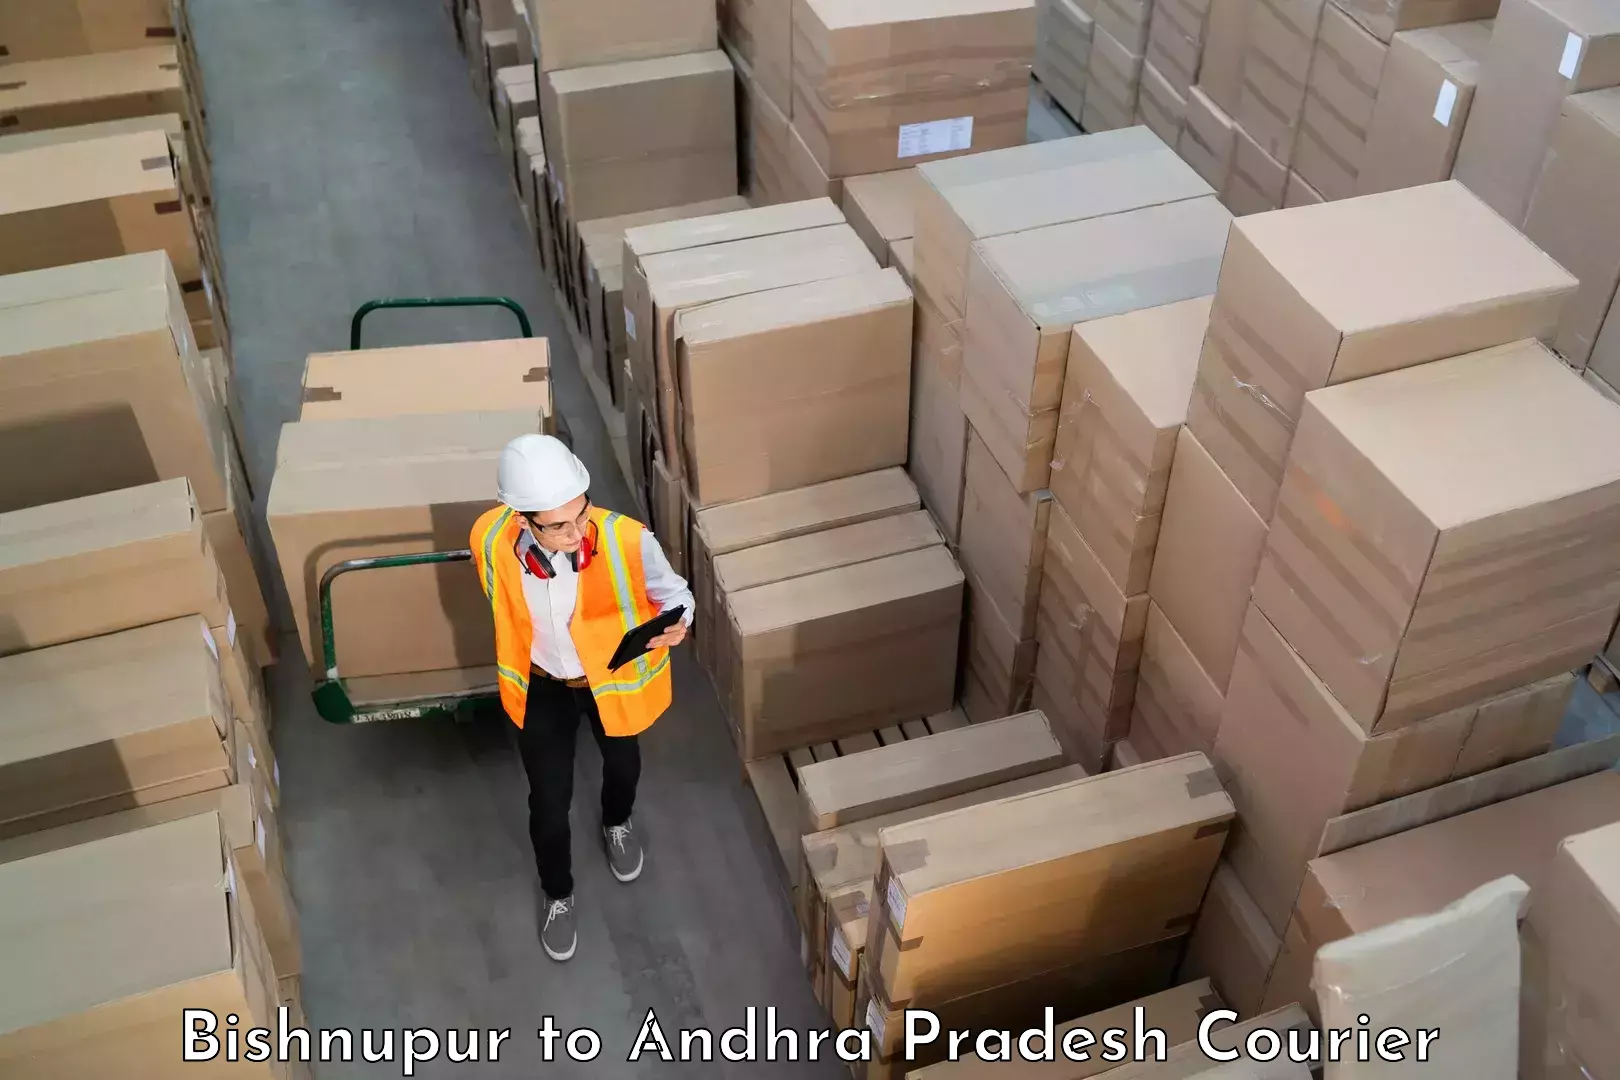 Luggage dispatch service Bishnupur to Andhra Pradesh